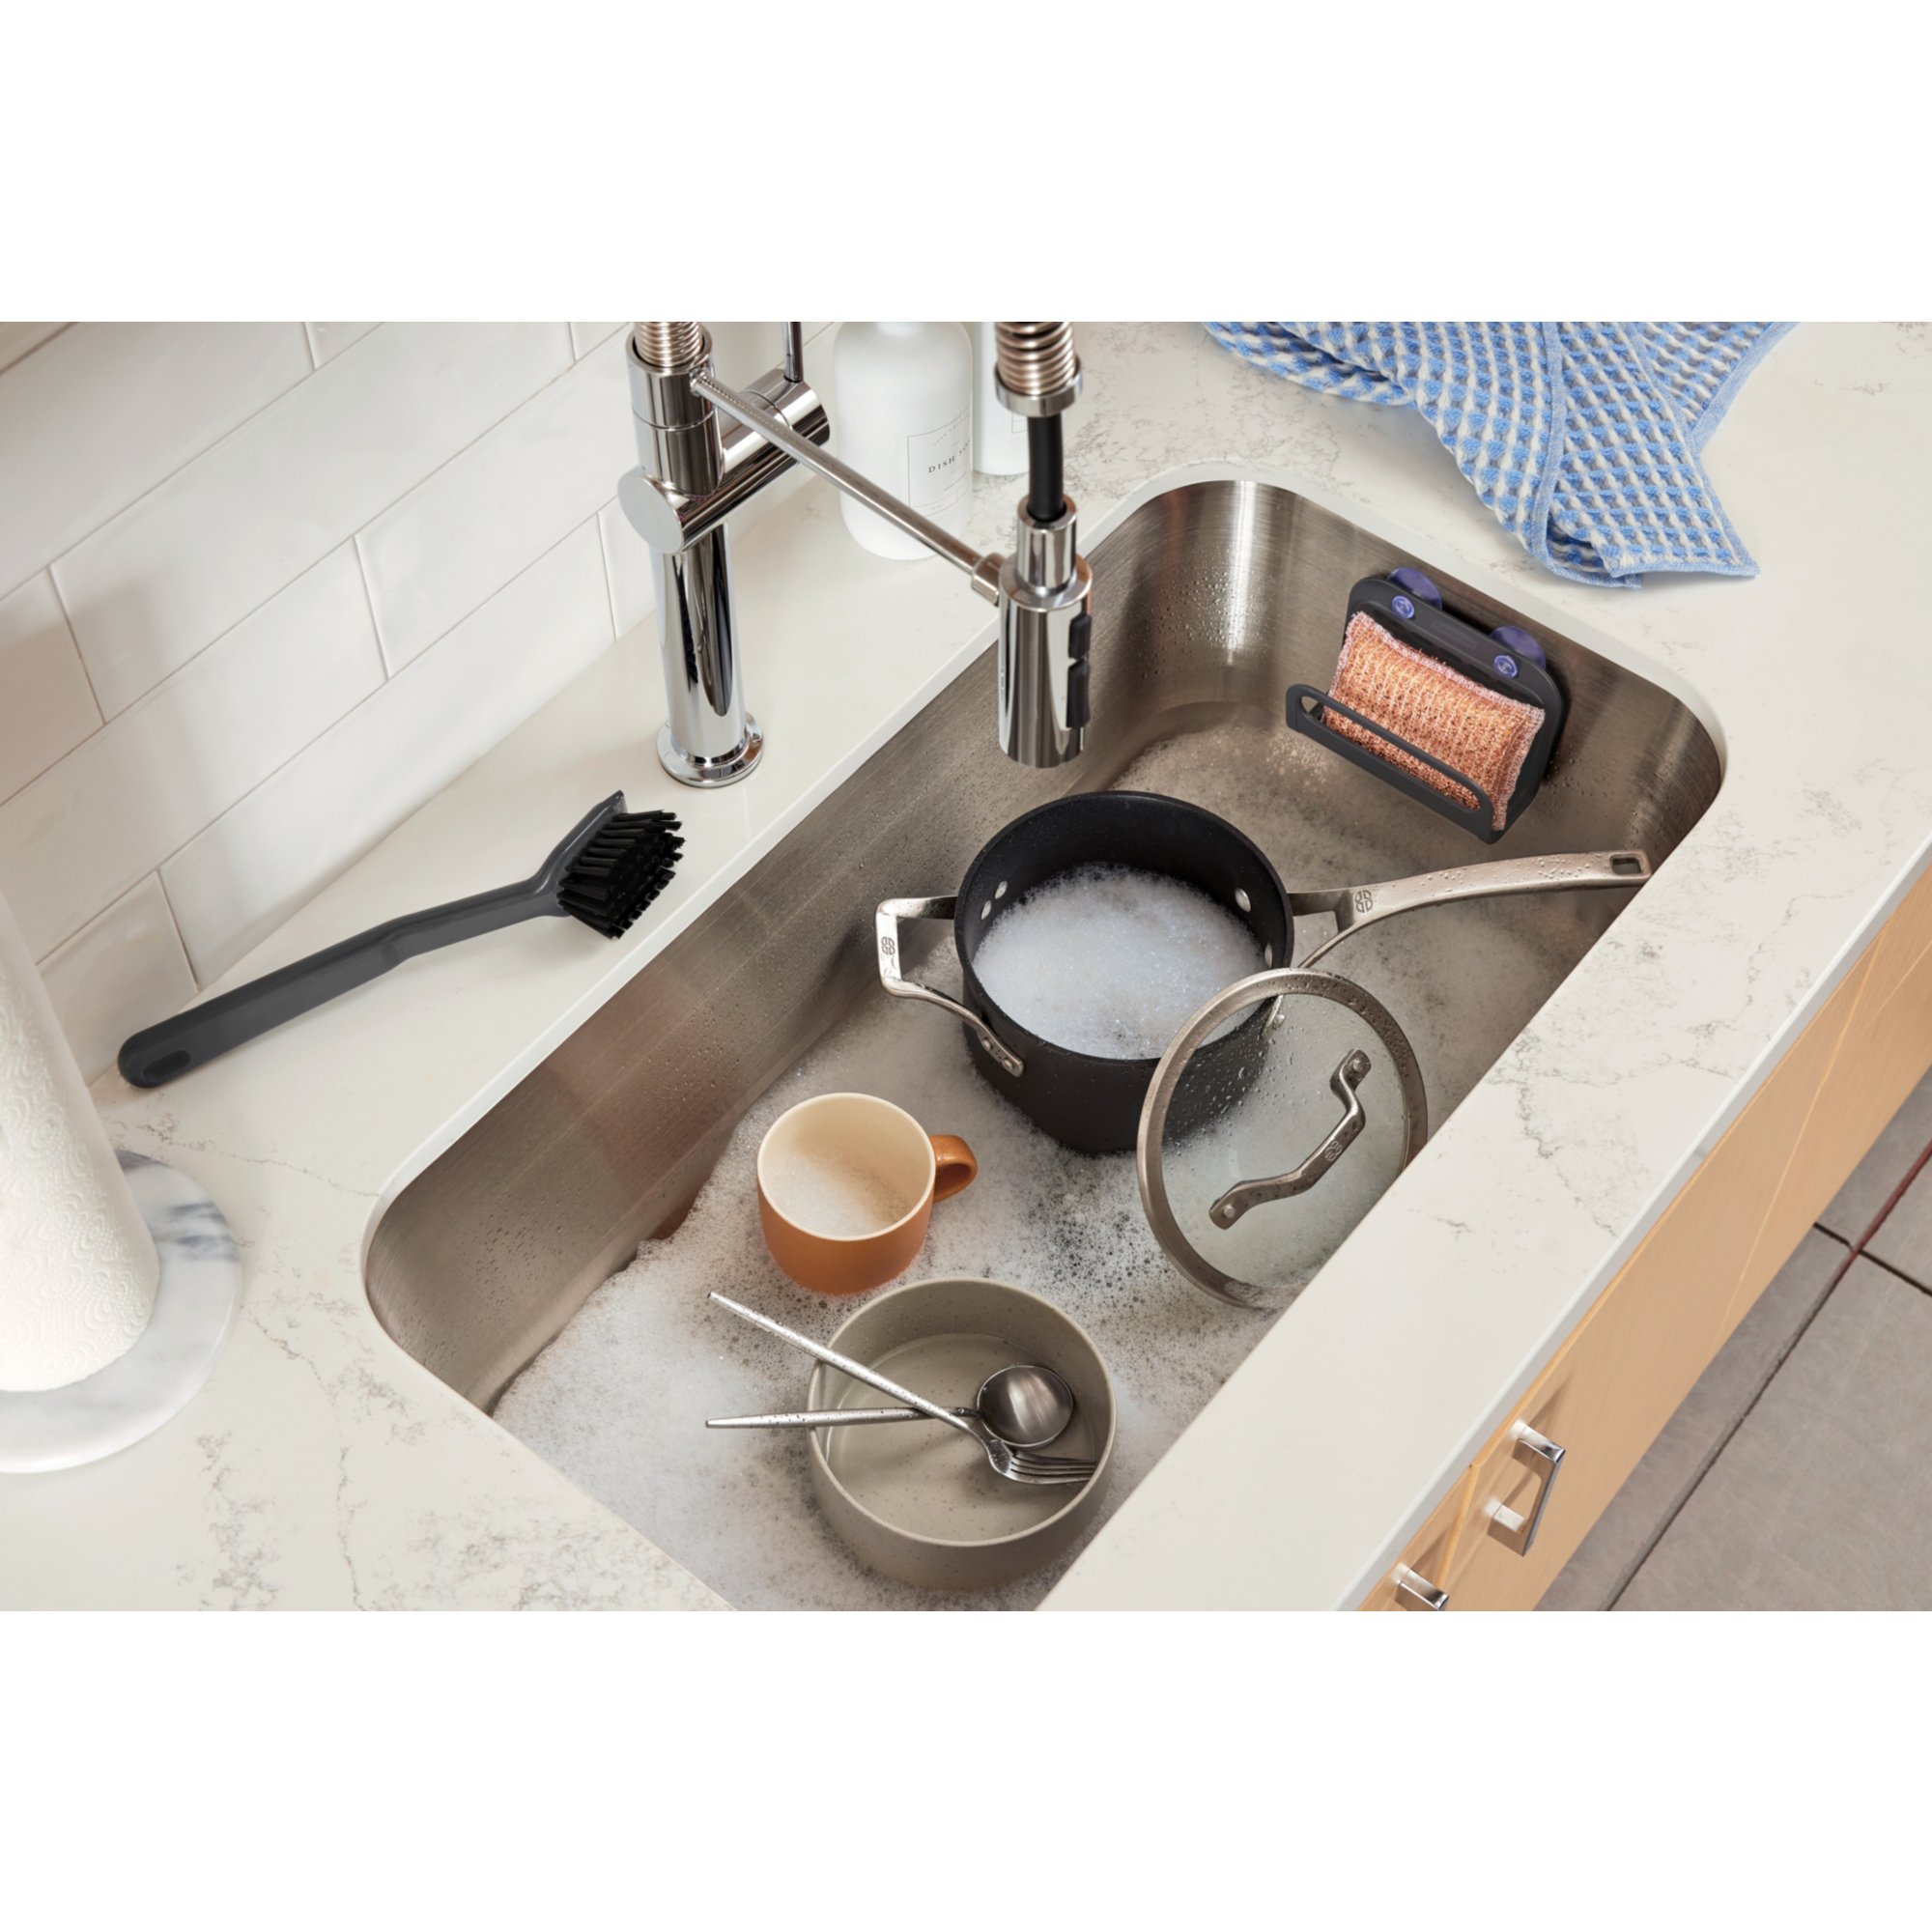 Instant Dry Sink Organizer, 11.8 inch Kitchen Sink Caddy Sponge Holder Dark Grey